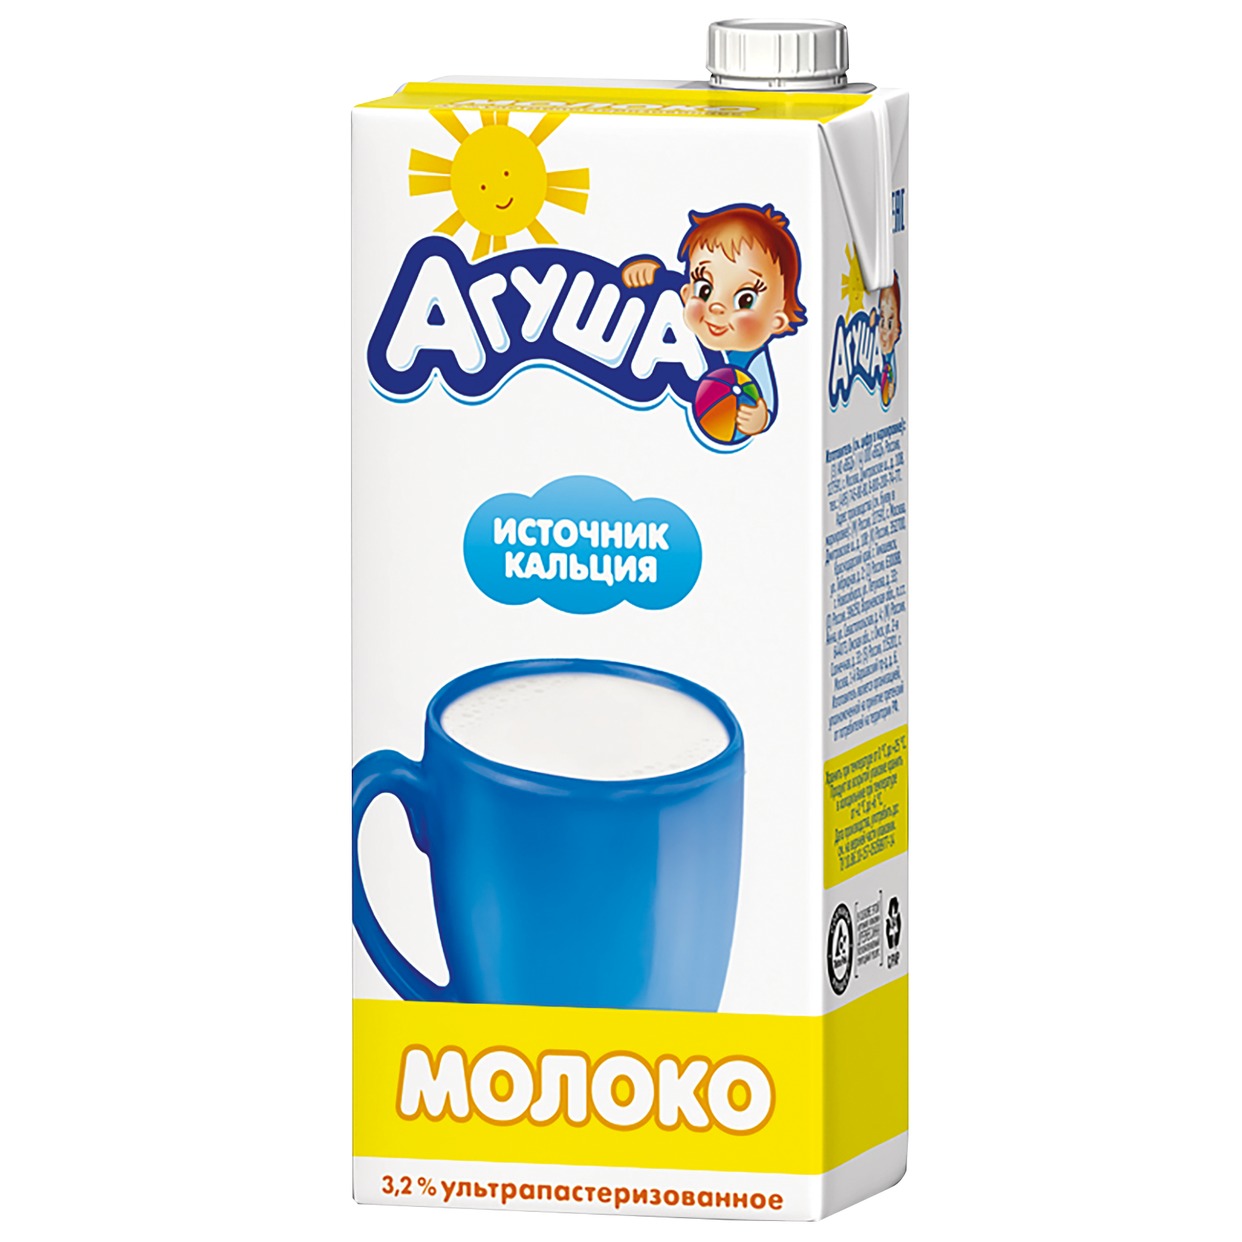 Молоко Агуша для детей от 3 лет ультрапастеризованное 3,2% 925мл по акции в Пятерочке